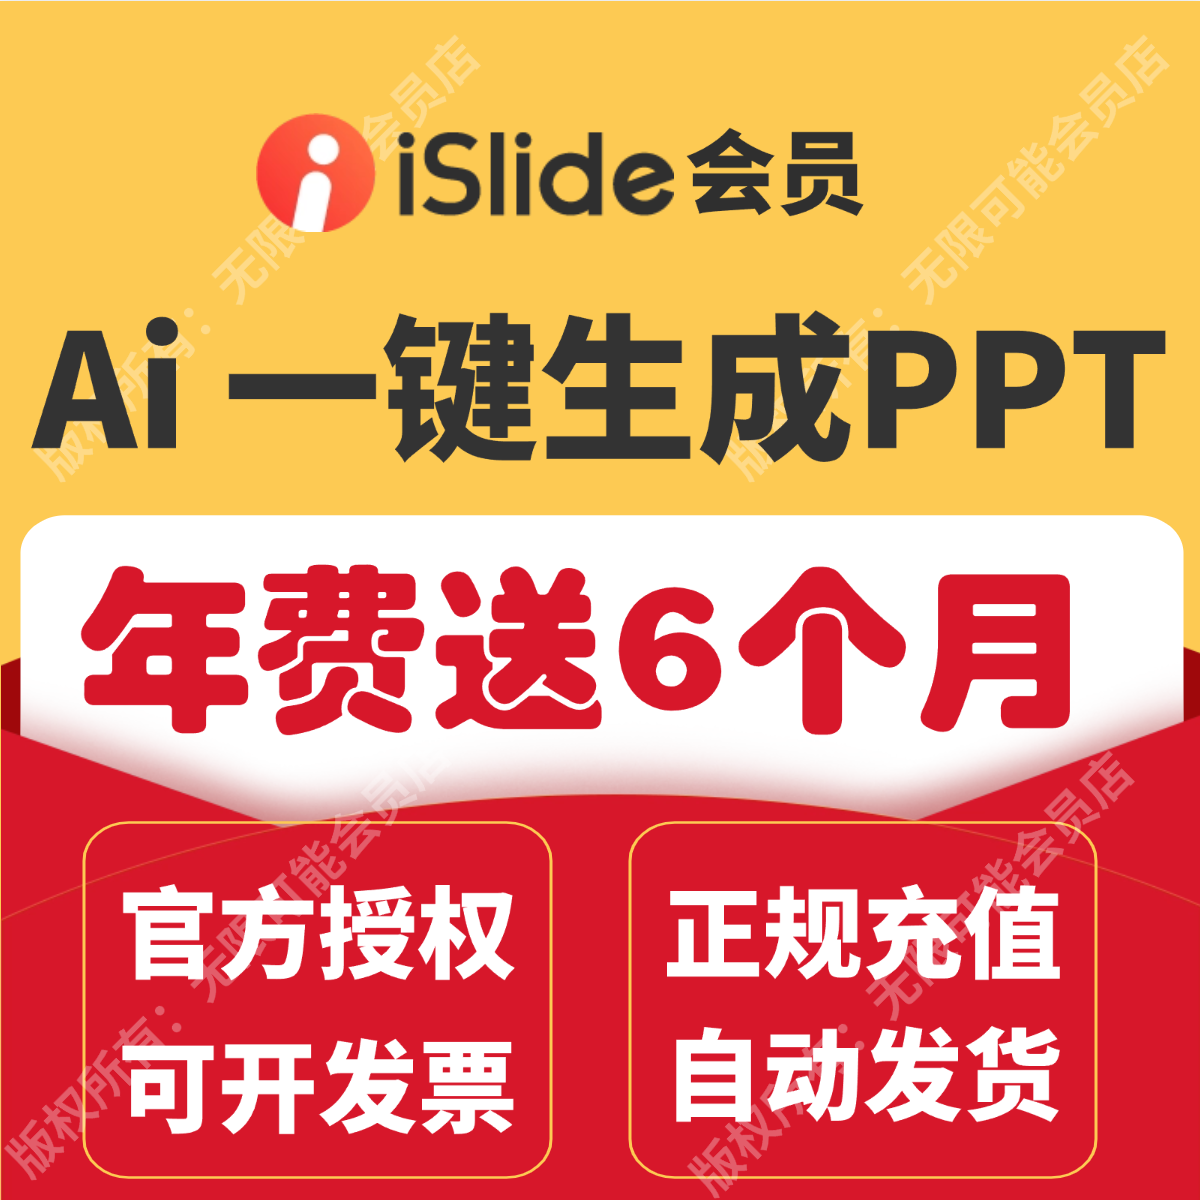 [官方正版]iSlide会员兑换码 AIPPT生成PPT插件永久终身VIP制作